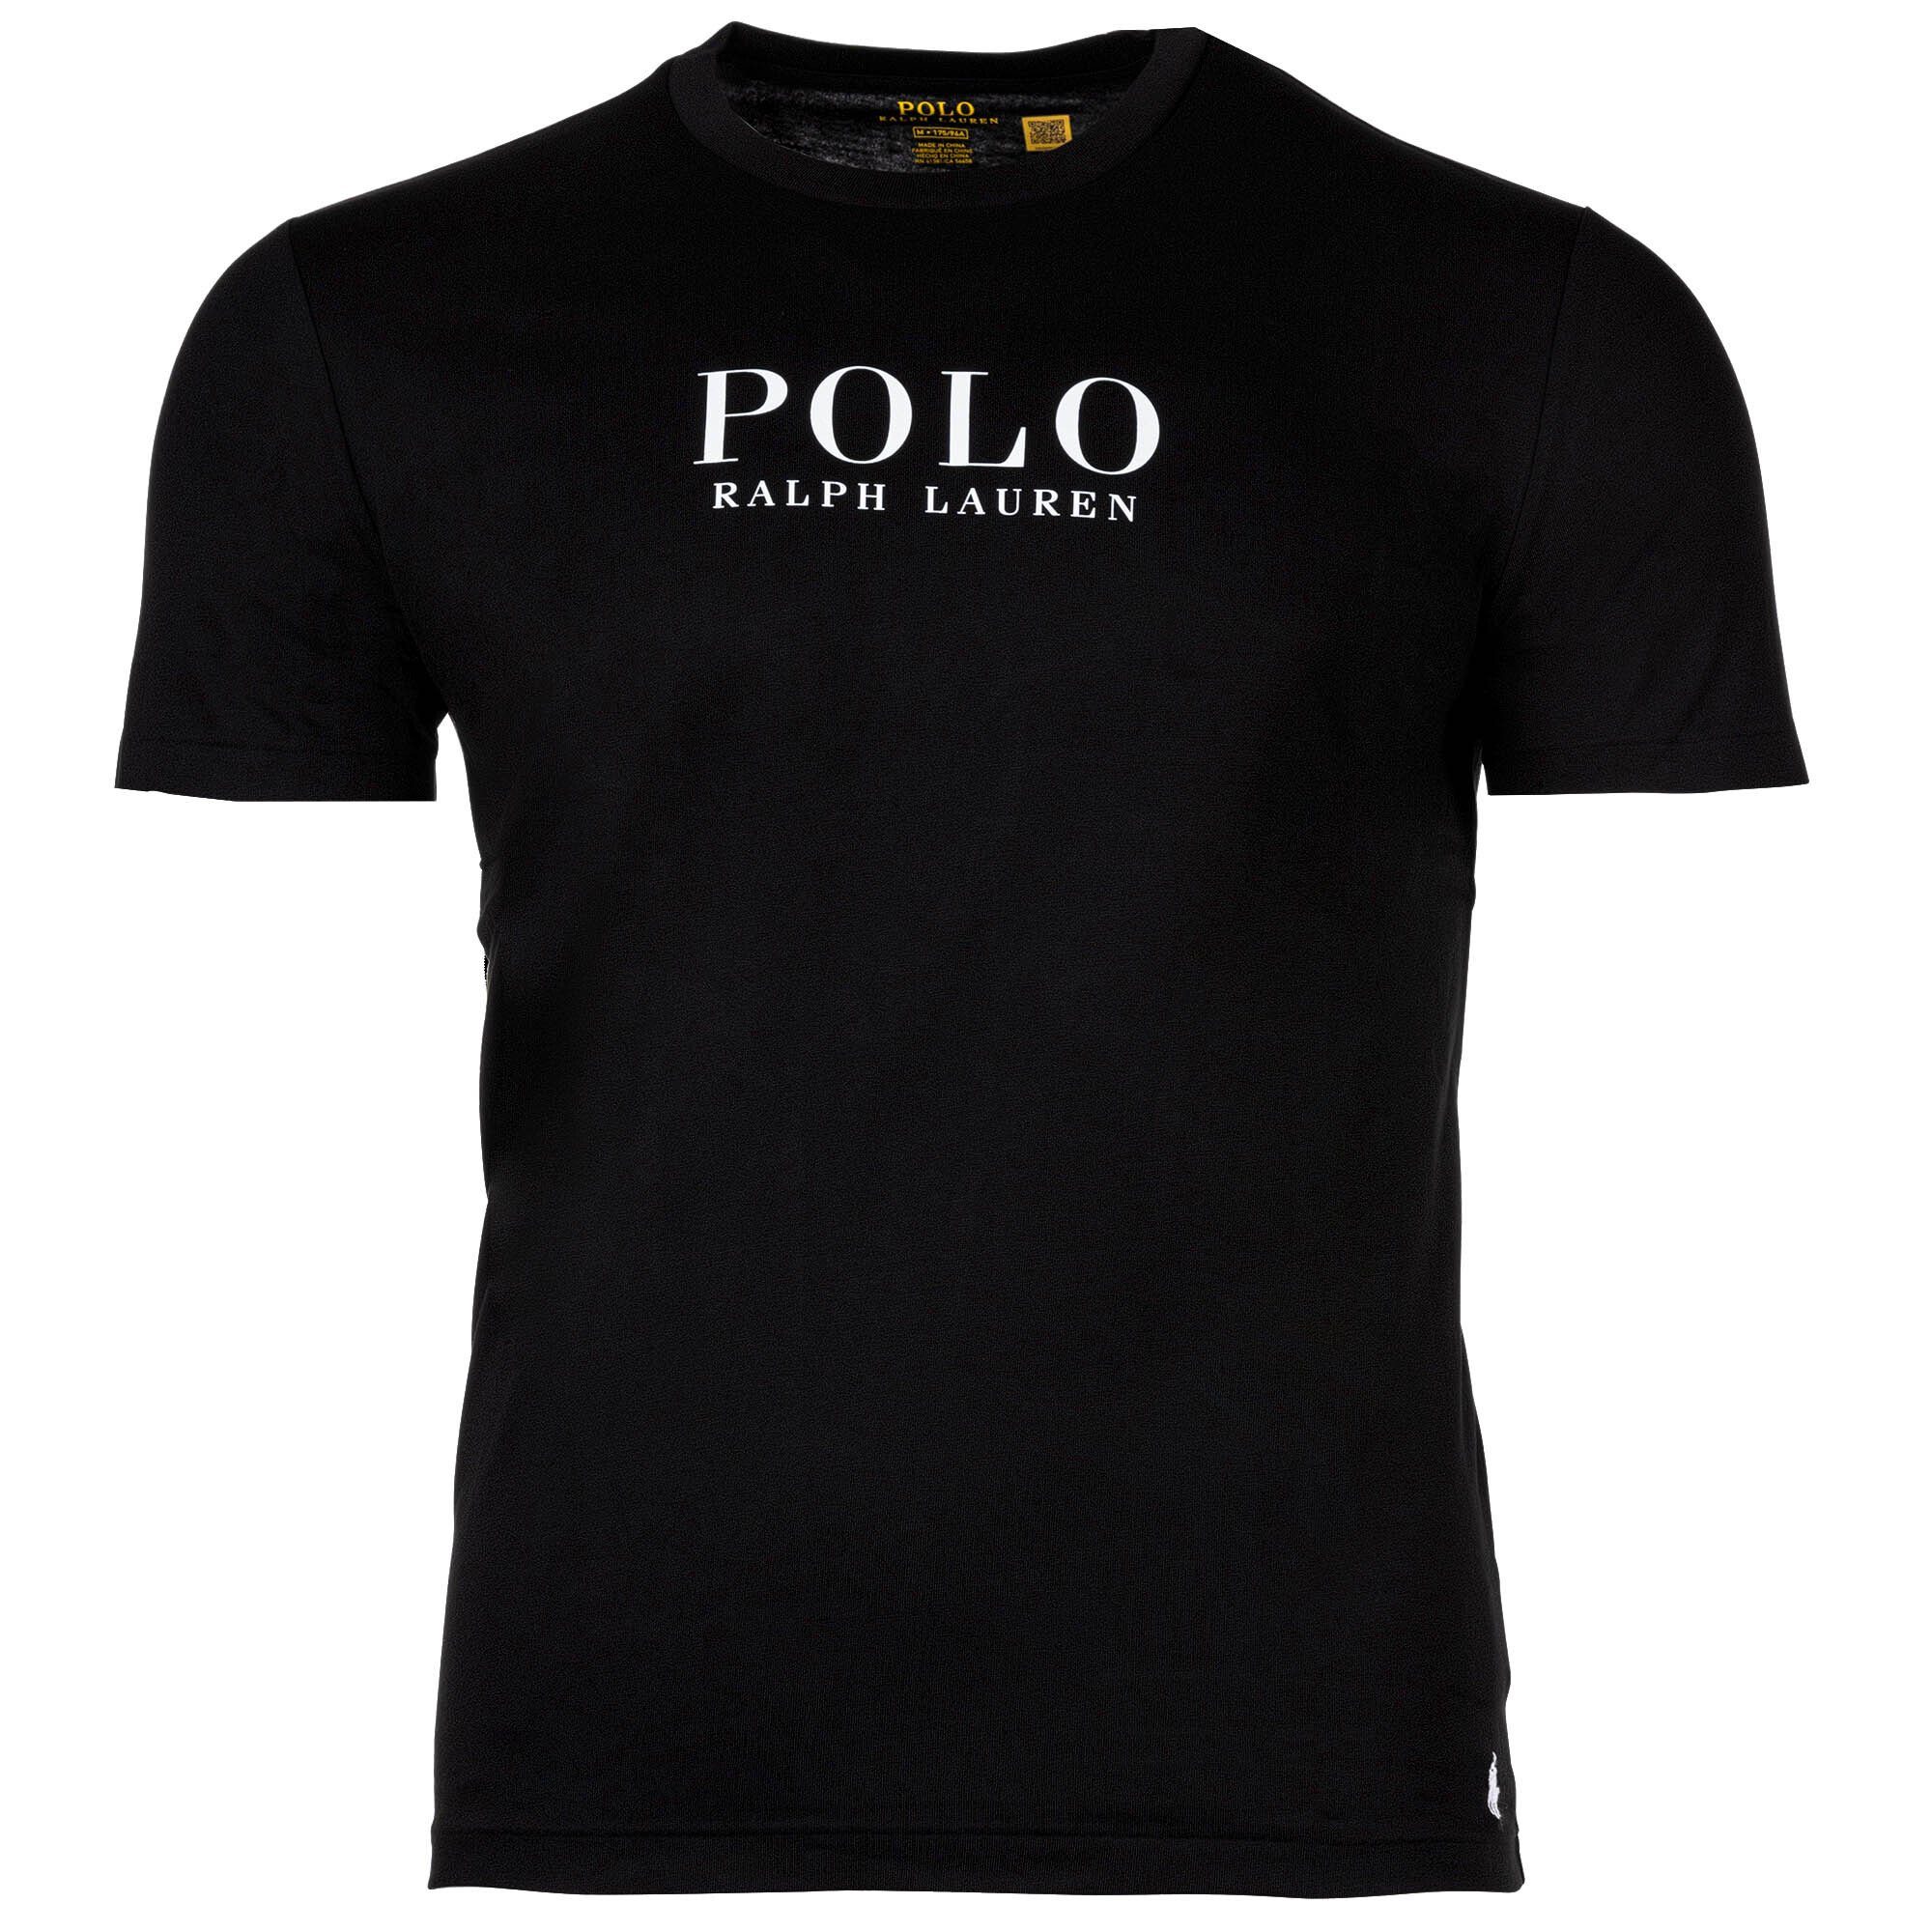 Polo Ralph Lauren T-Shirt Herren Schwarz - Schlafshirt TOP, T-Shirt CREW-SLEEP